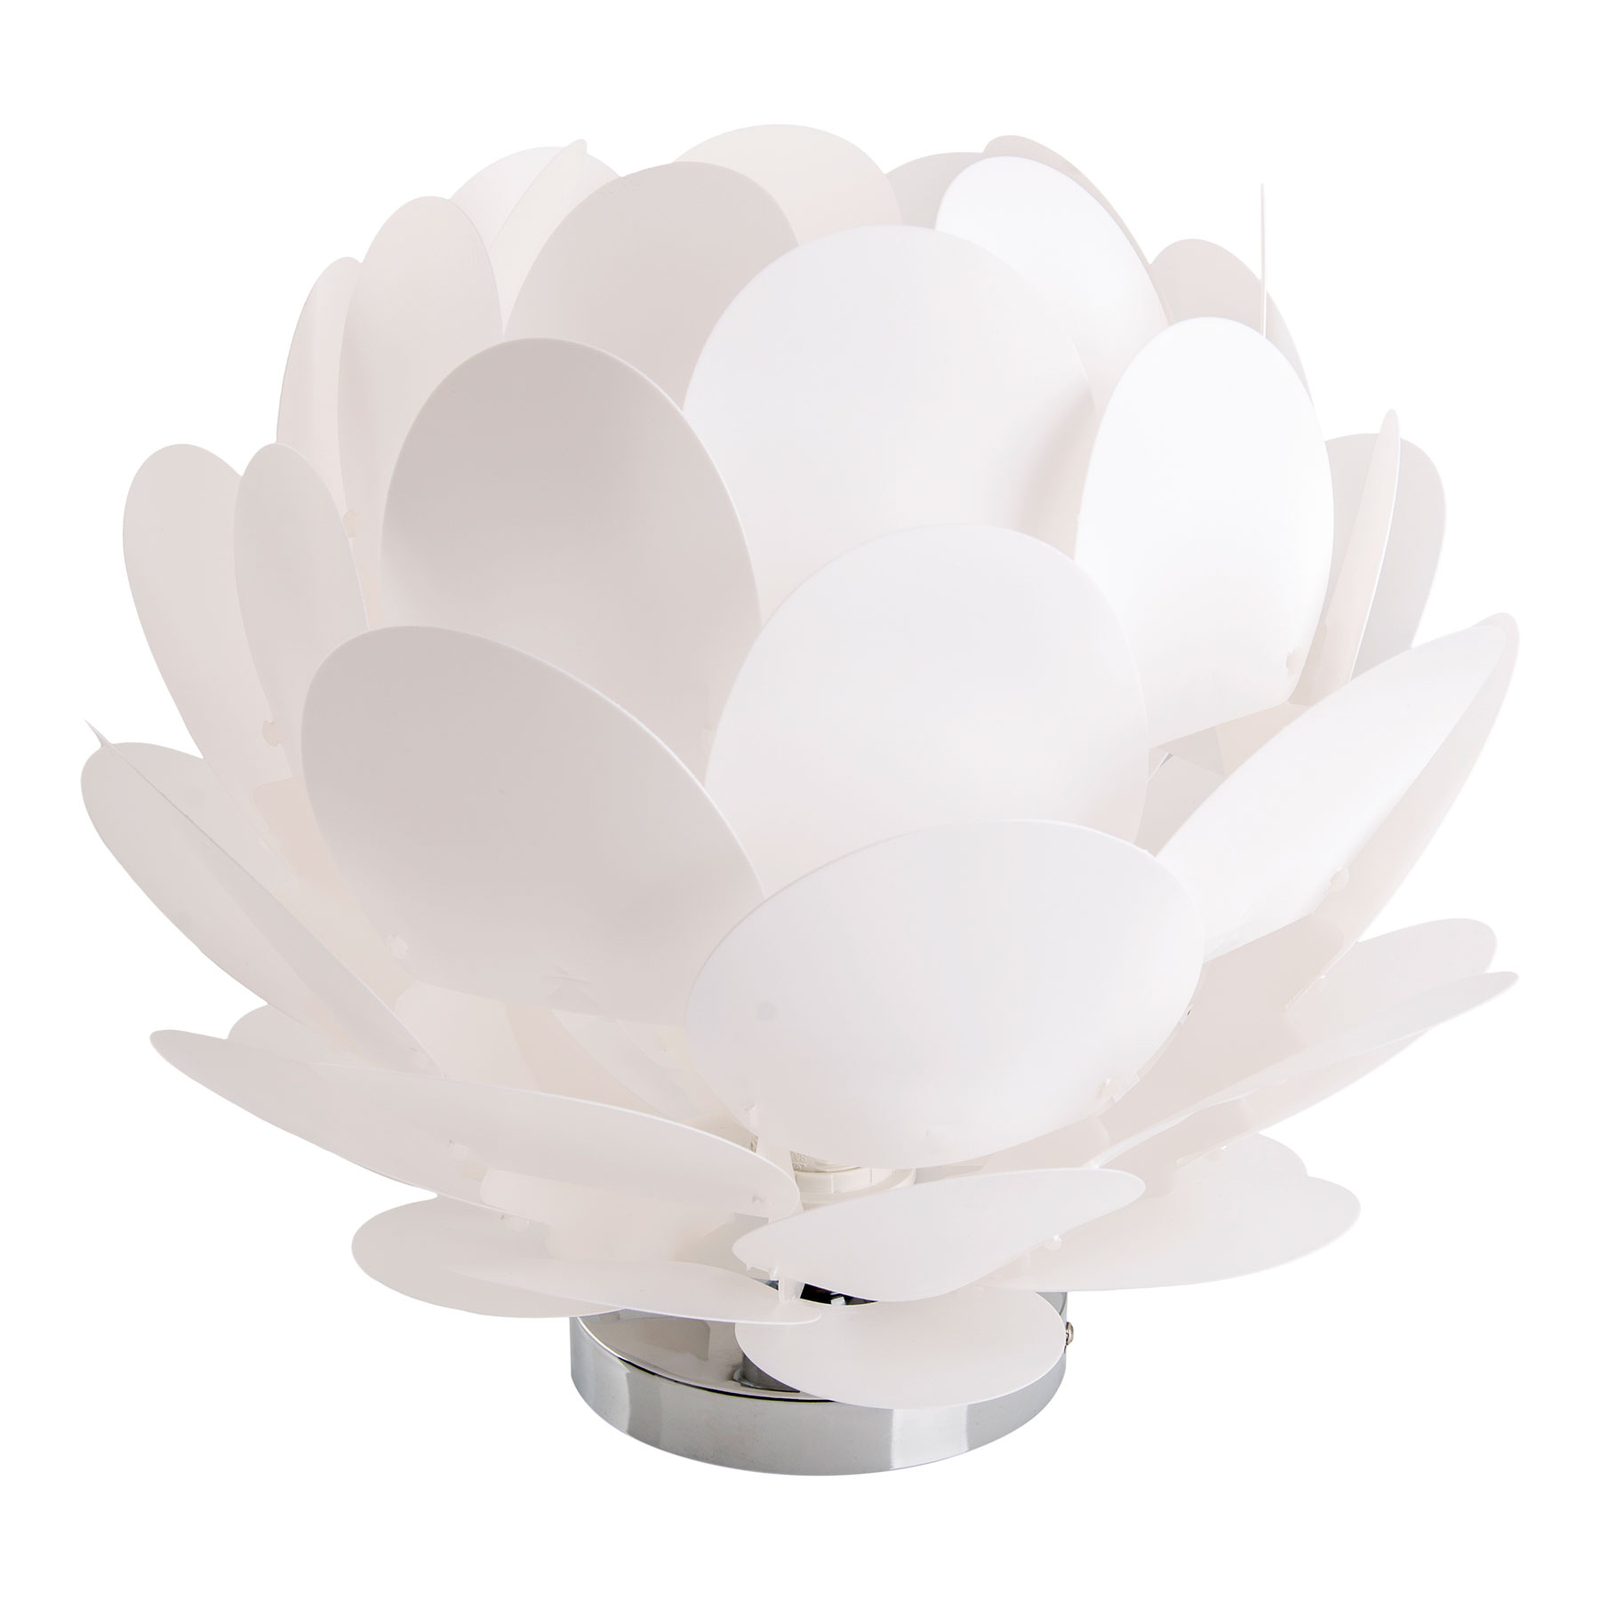 Bordslampa Fora i blomform, vit